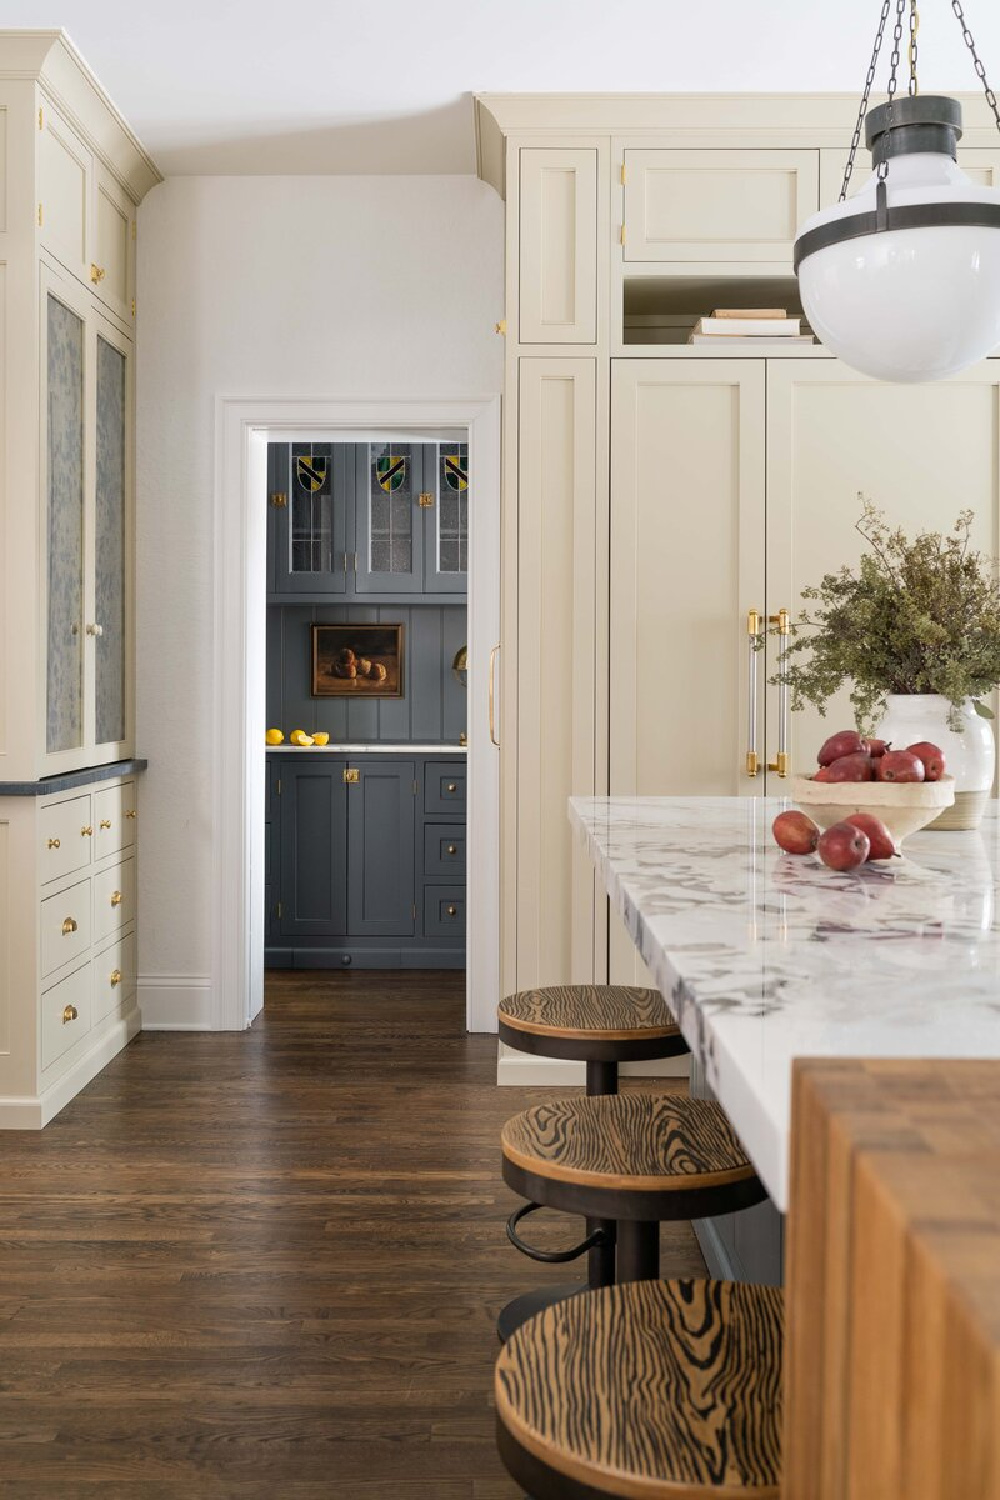 Warm white kitchen with dark painted island and design by Whittney Parkinson. #warmwhitekitchen #whitekitchencabinets